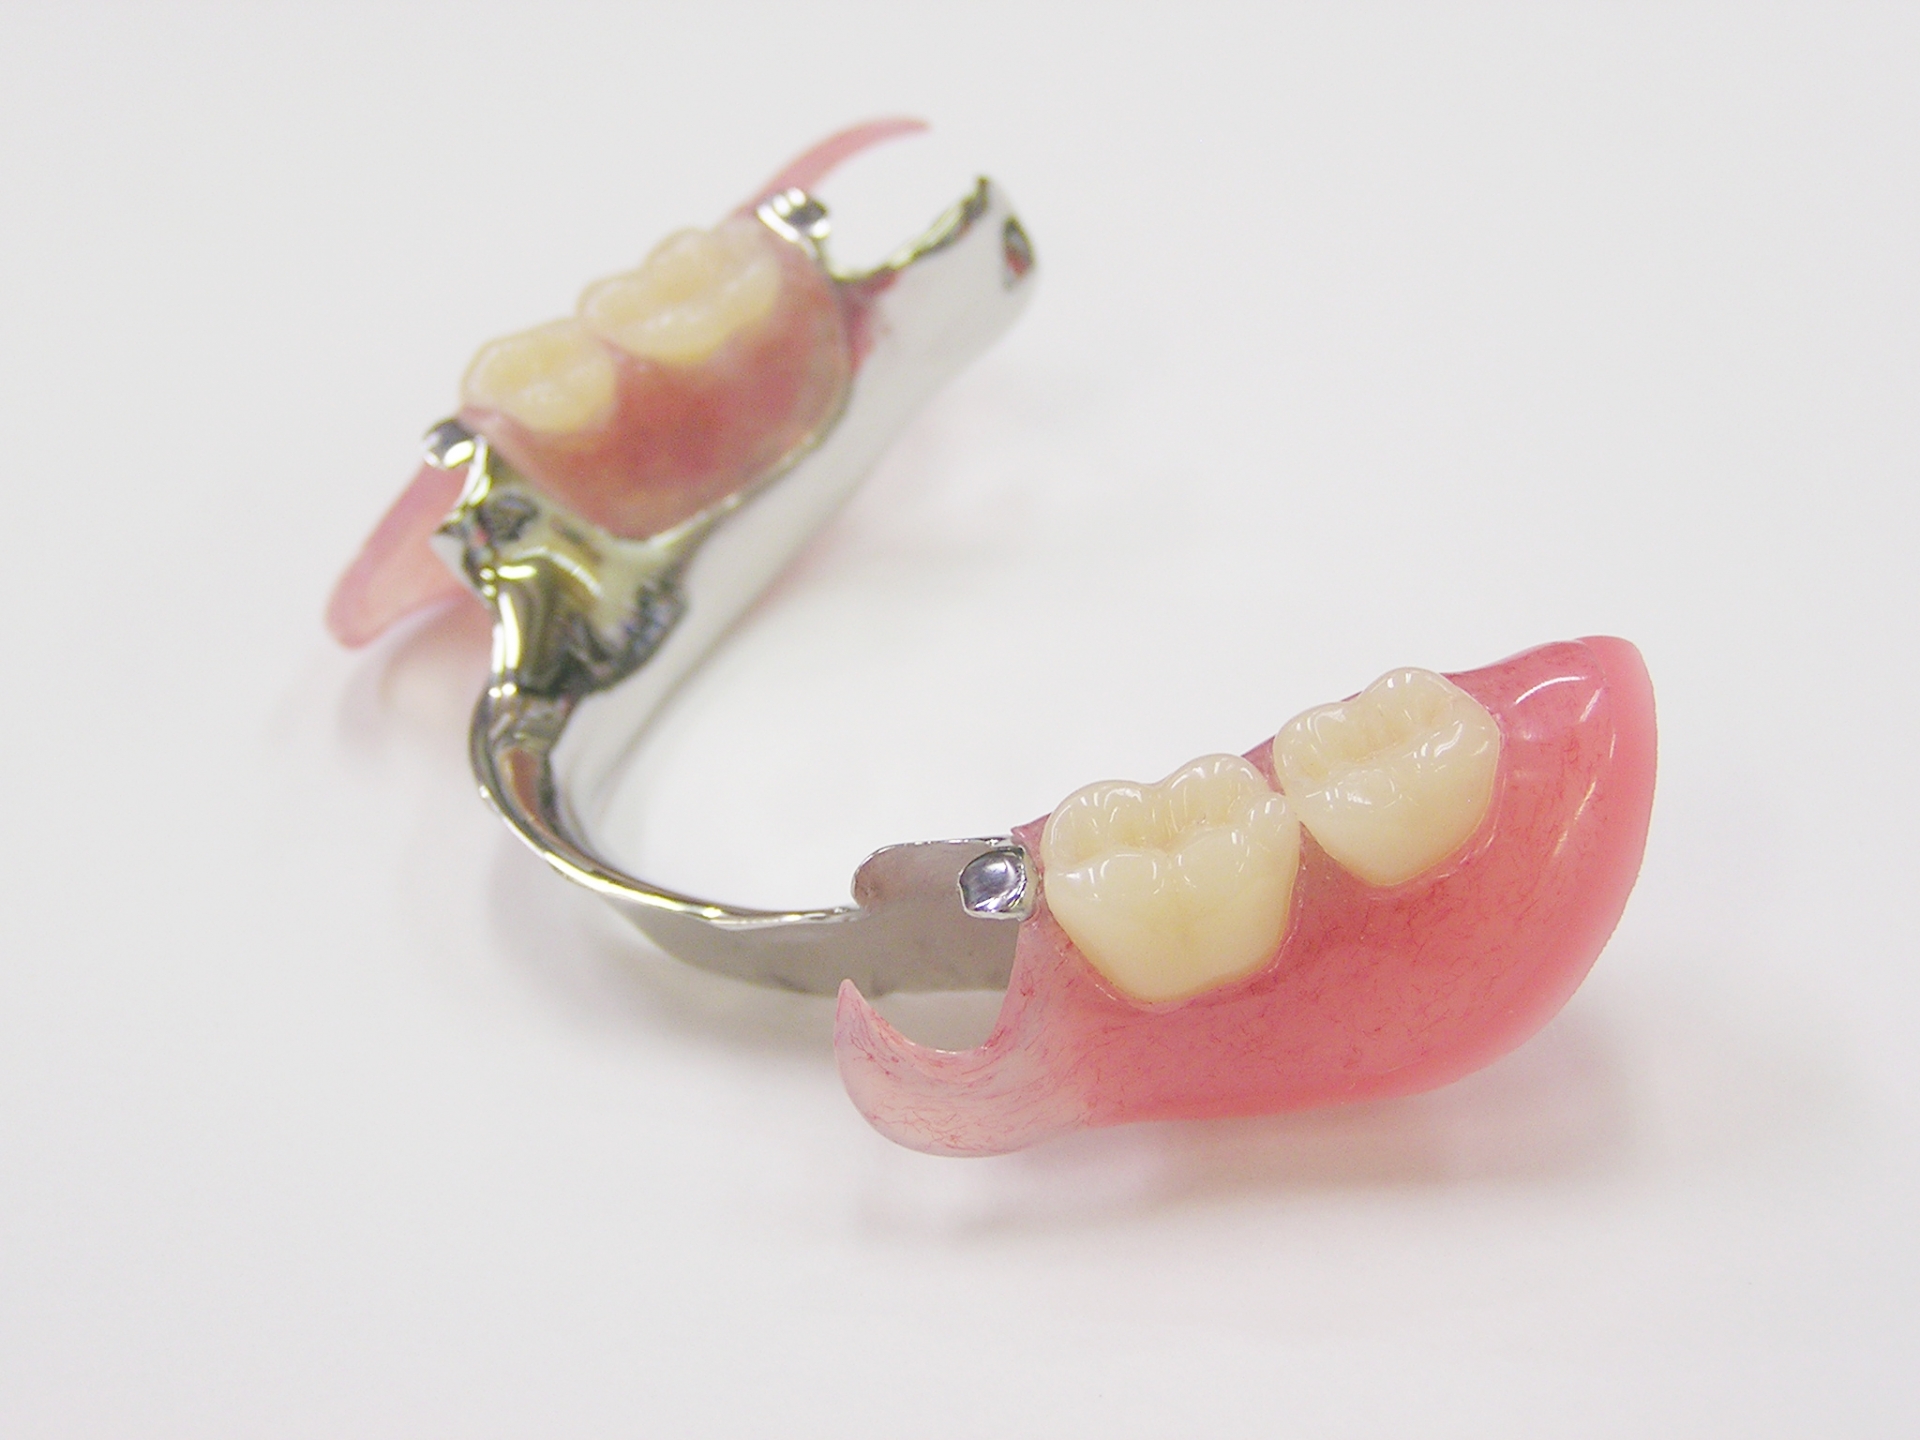 金属床とプラスチックの入れ歯の違いについて